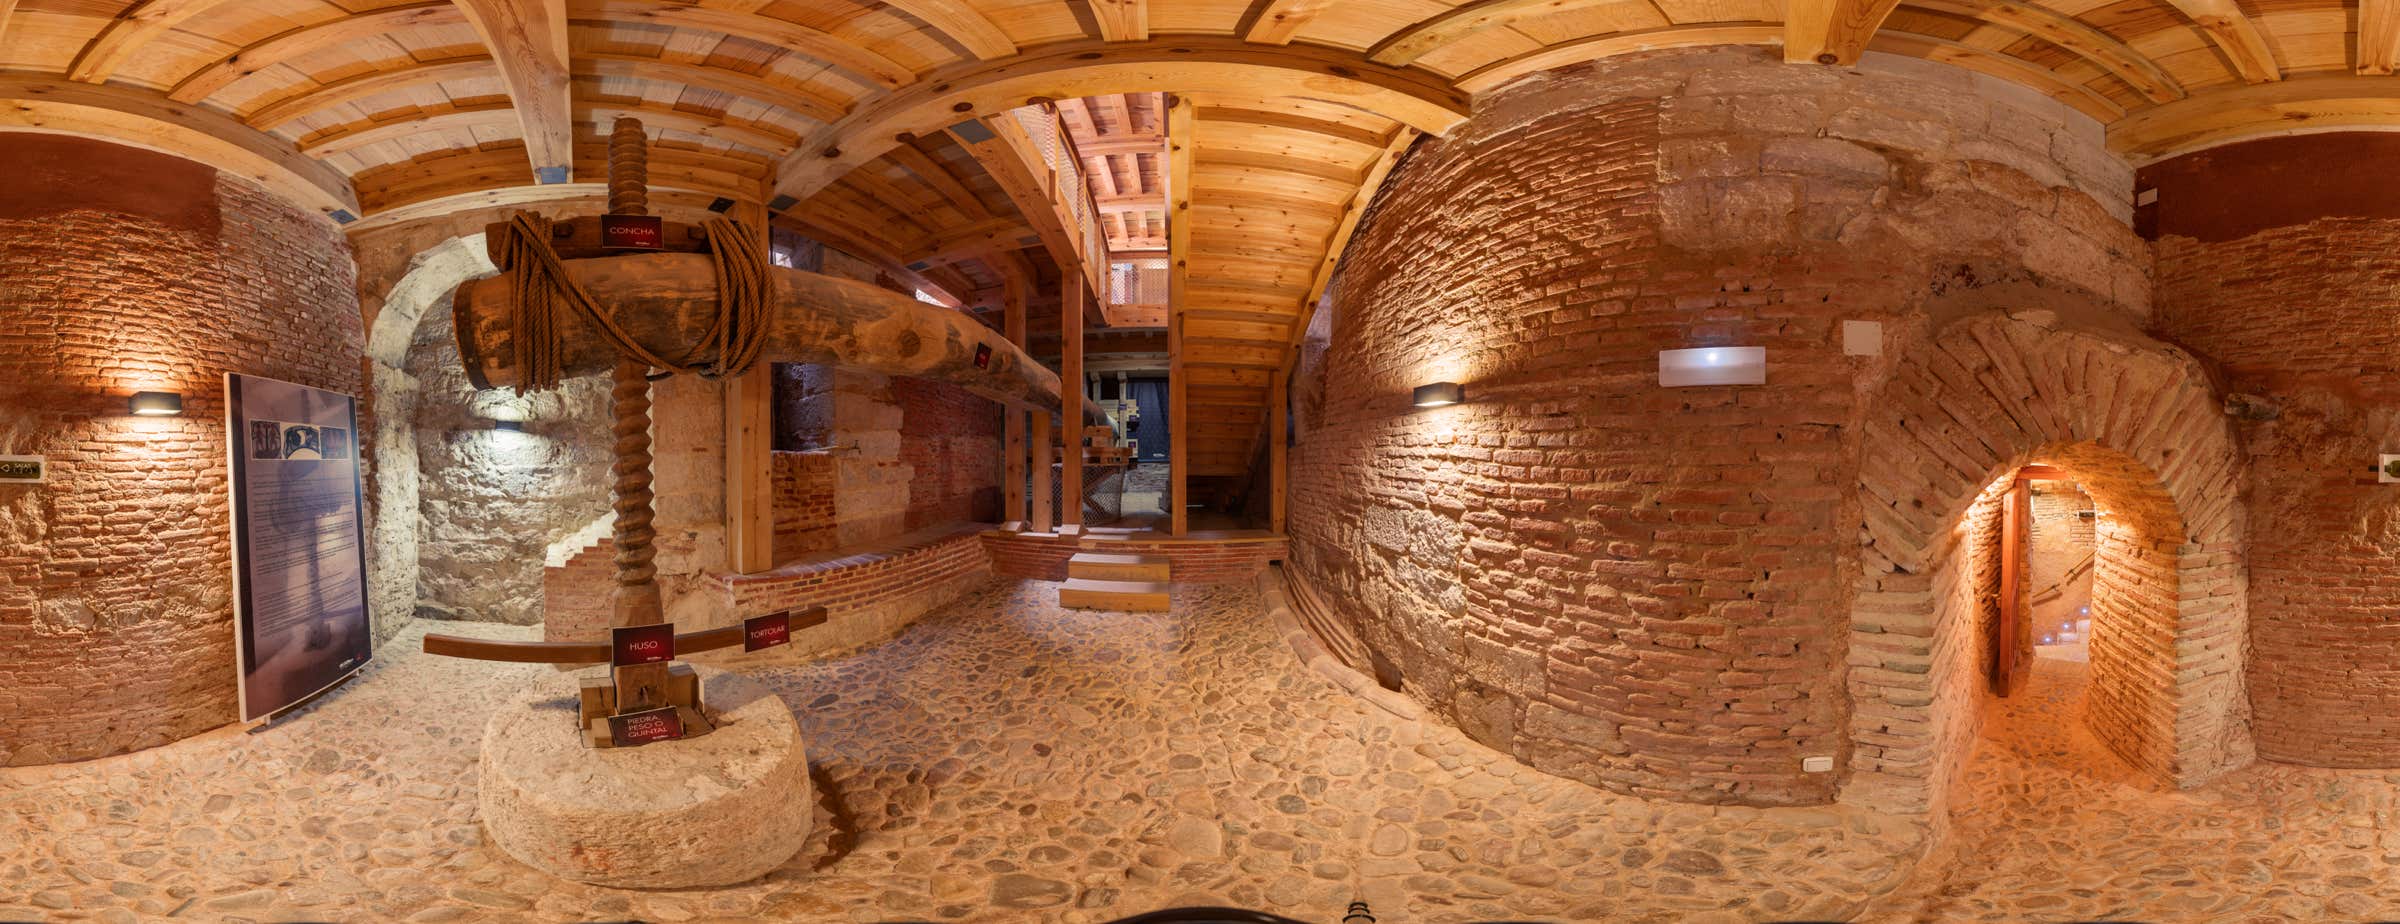 Imagen panorámica de 360° del interior del museo que muestra una gran prensa de madera utilizada para extraer el zumo de la uva.